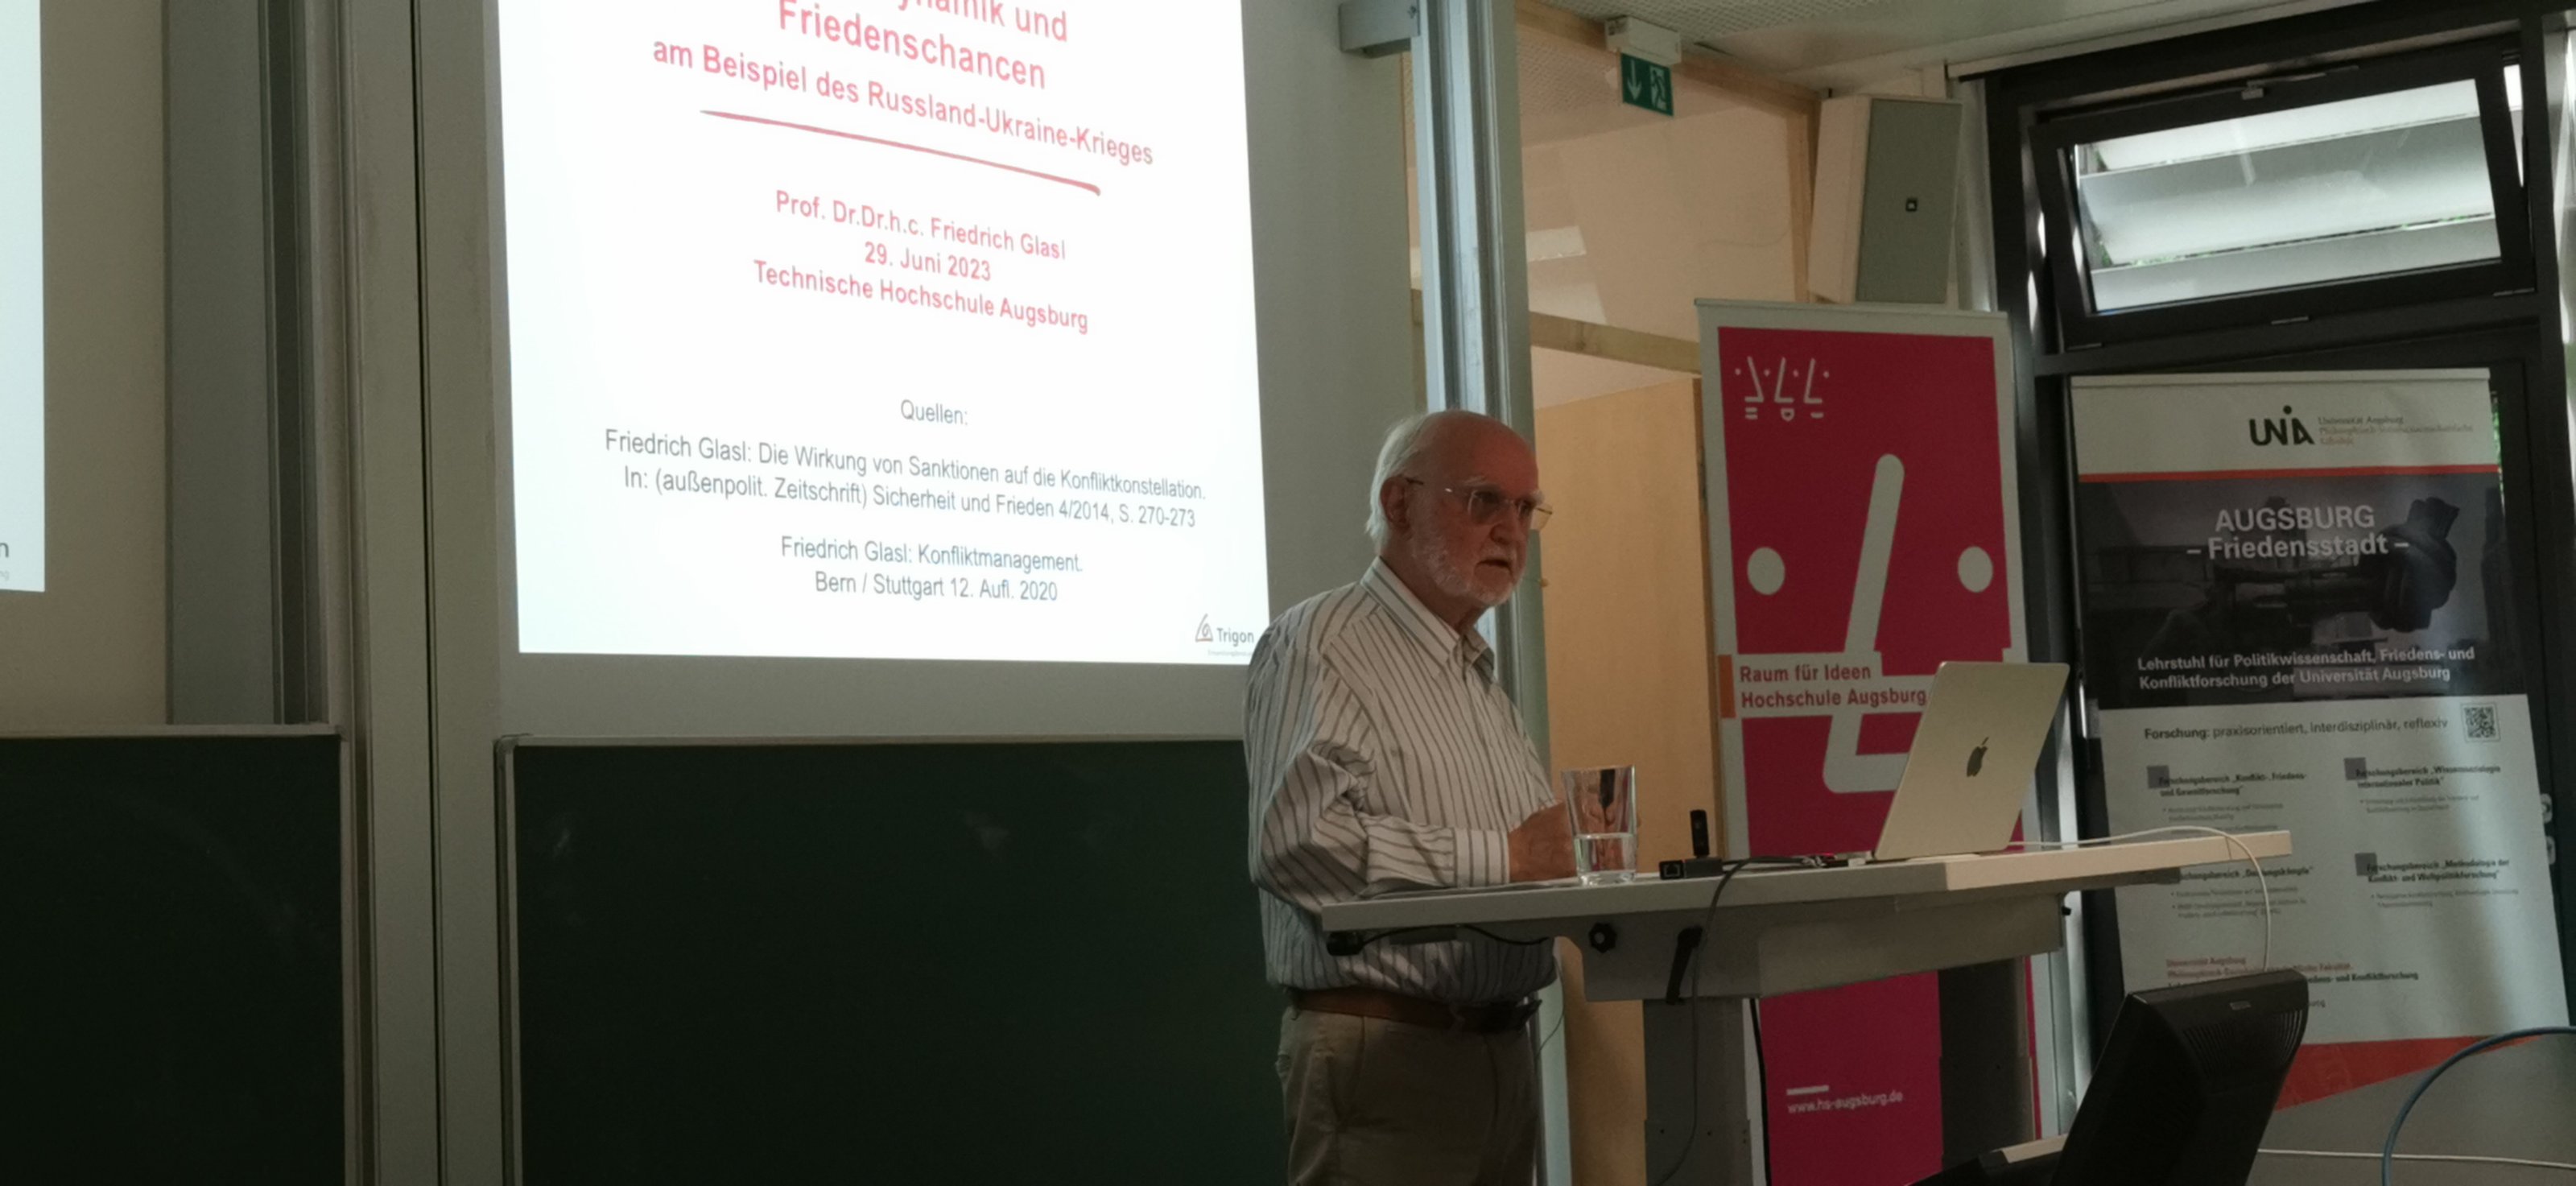 Prof. Friedrich Glasl beim Vortrag